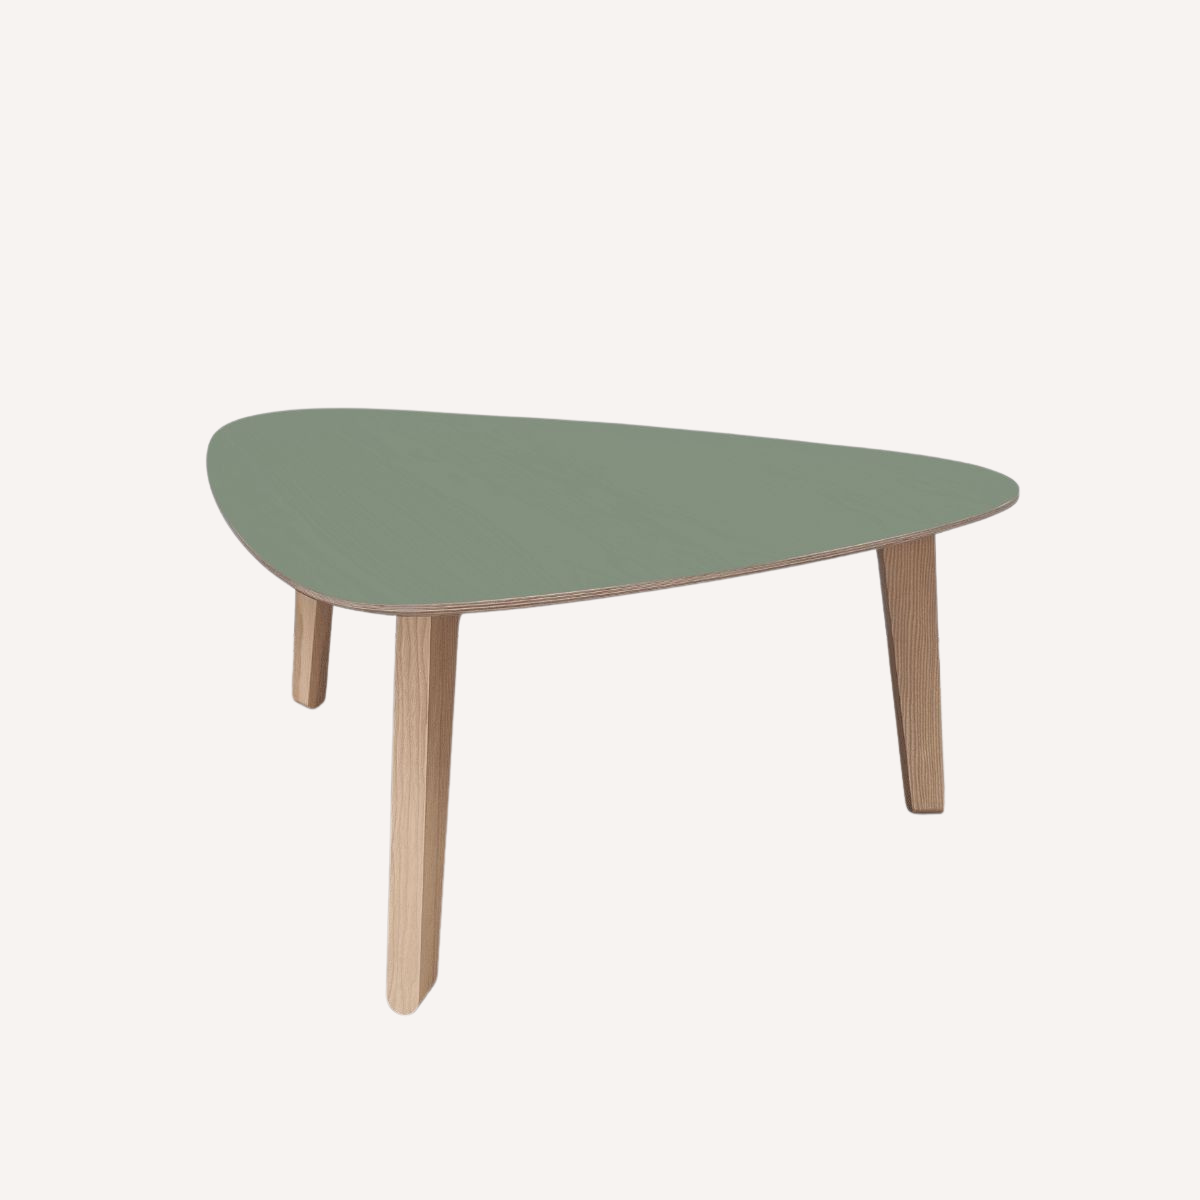 Table basse verte "Stone" française & design en bois de frêne sain et durable par Skog Design